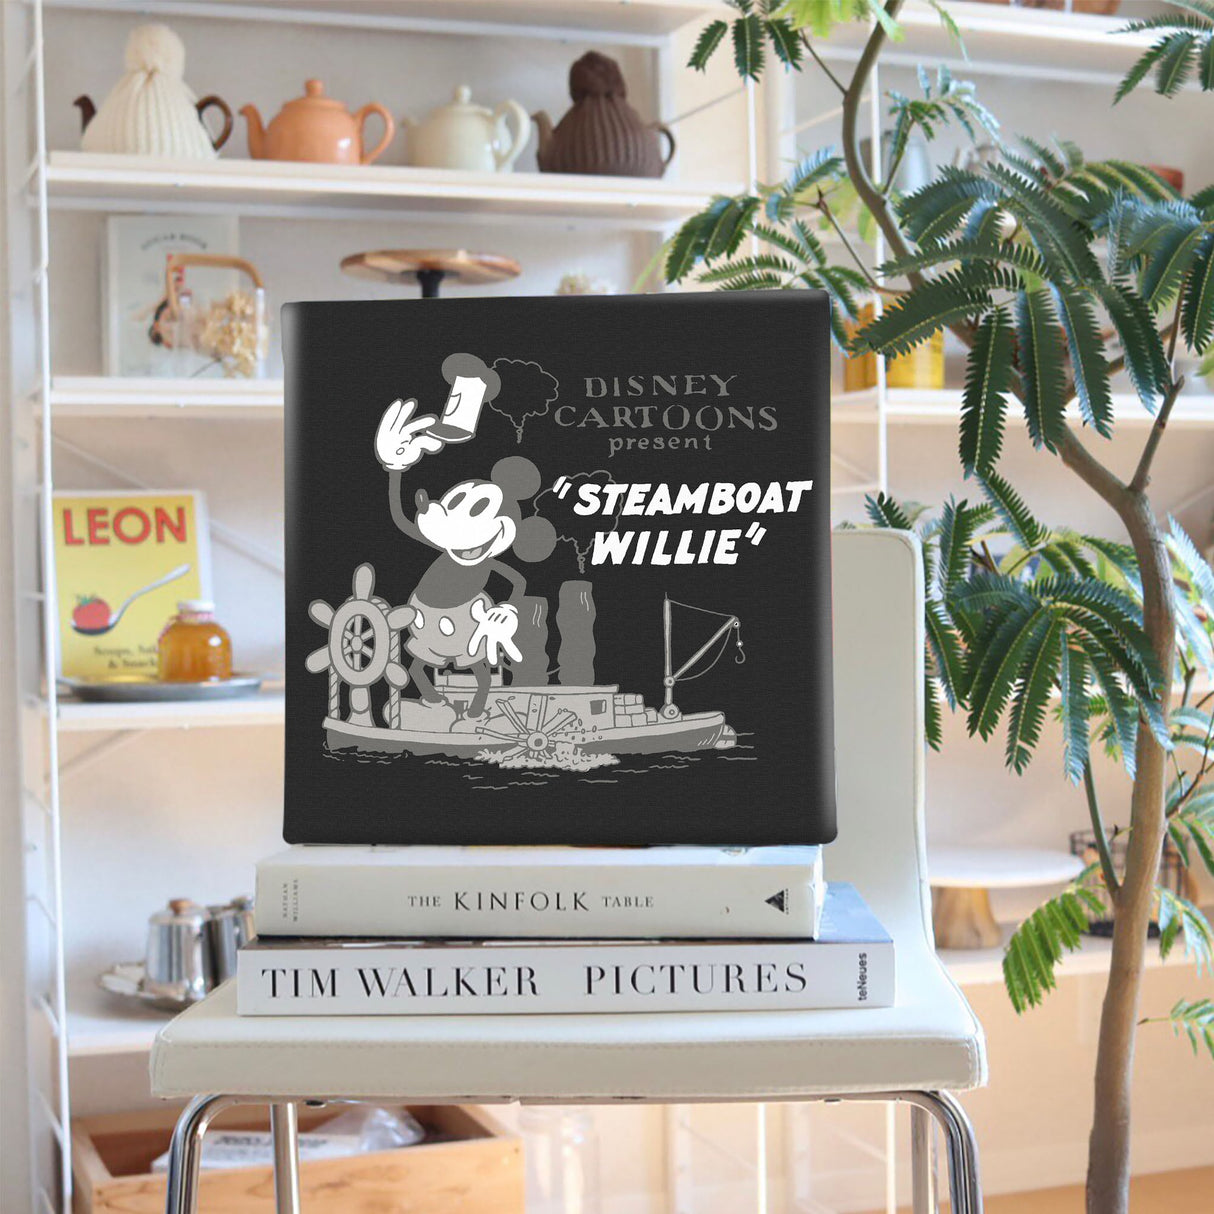 ミッキーマウスのファブリックパネル インテリア雑貨 アートパネル キャンバス ディズニー 蒸気船ウィリー dsny-2303-05